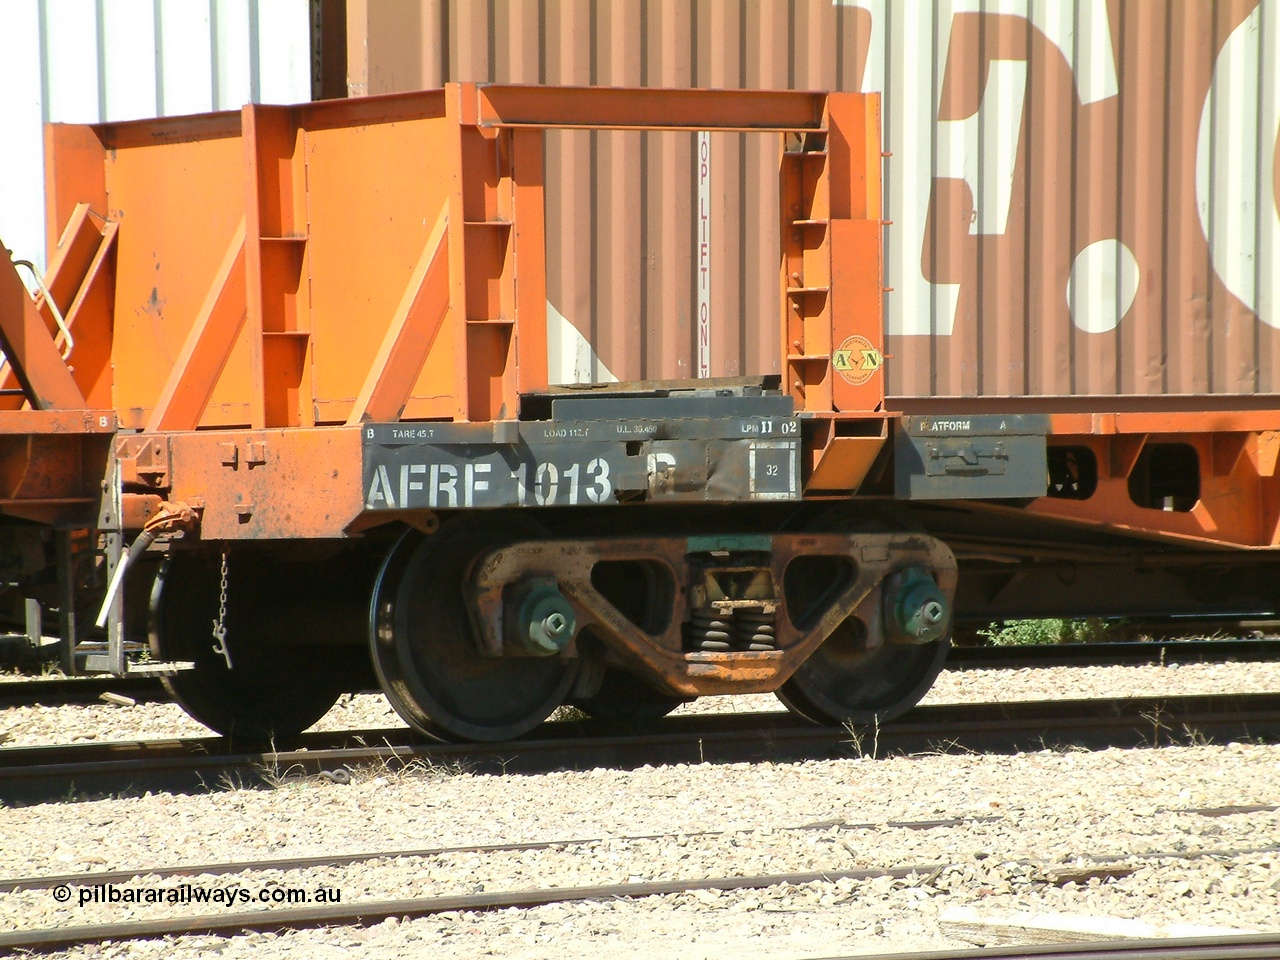 030404 132204
Port Augusta Spencer Junction yard, AFRF type rail transport waggon, number board of AFRF 1013 shows the Australia Northern logo.
Keywords: AFRF-type;AFRF-1013;